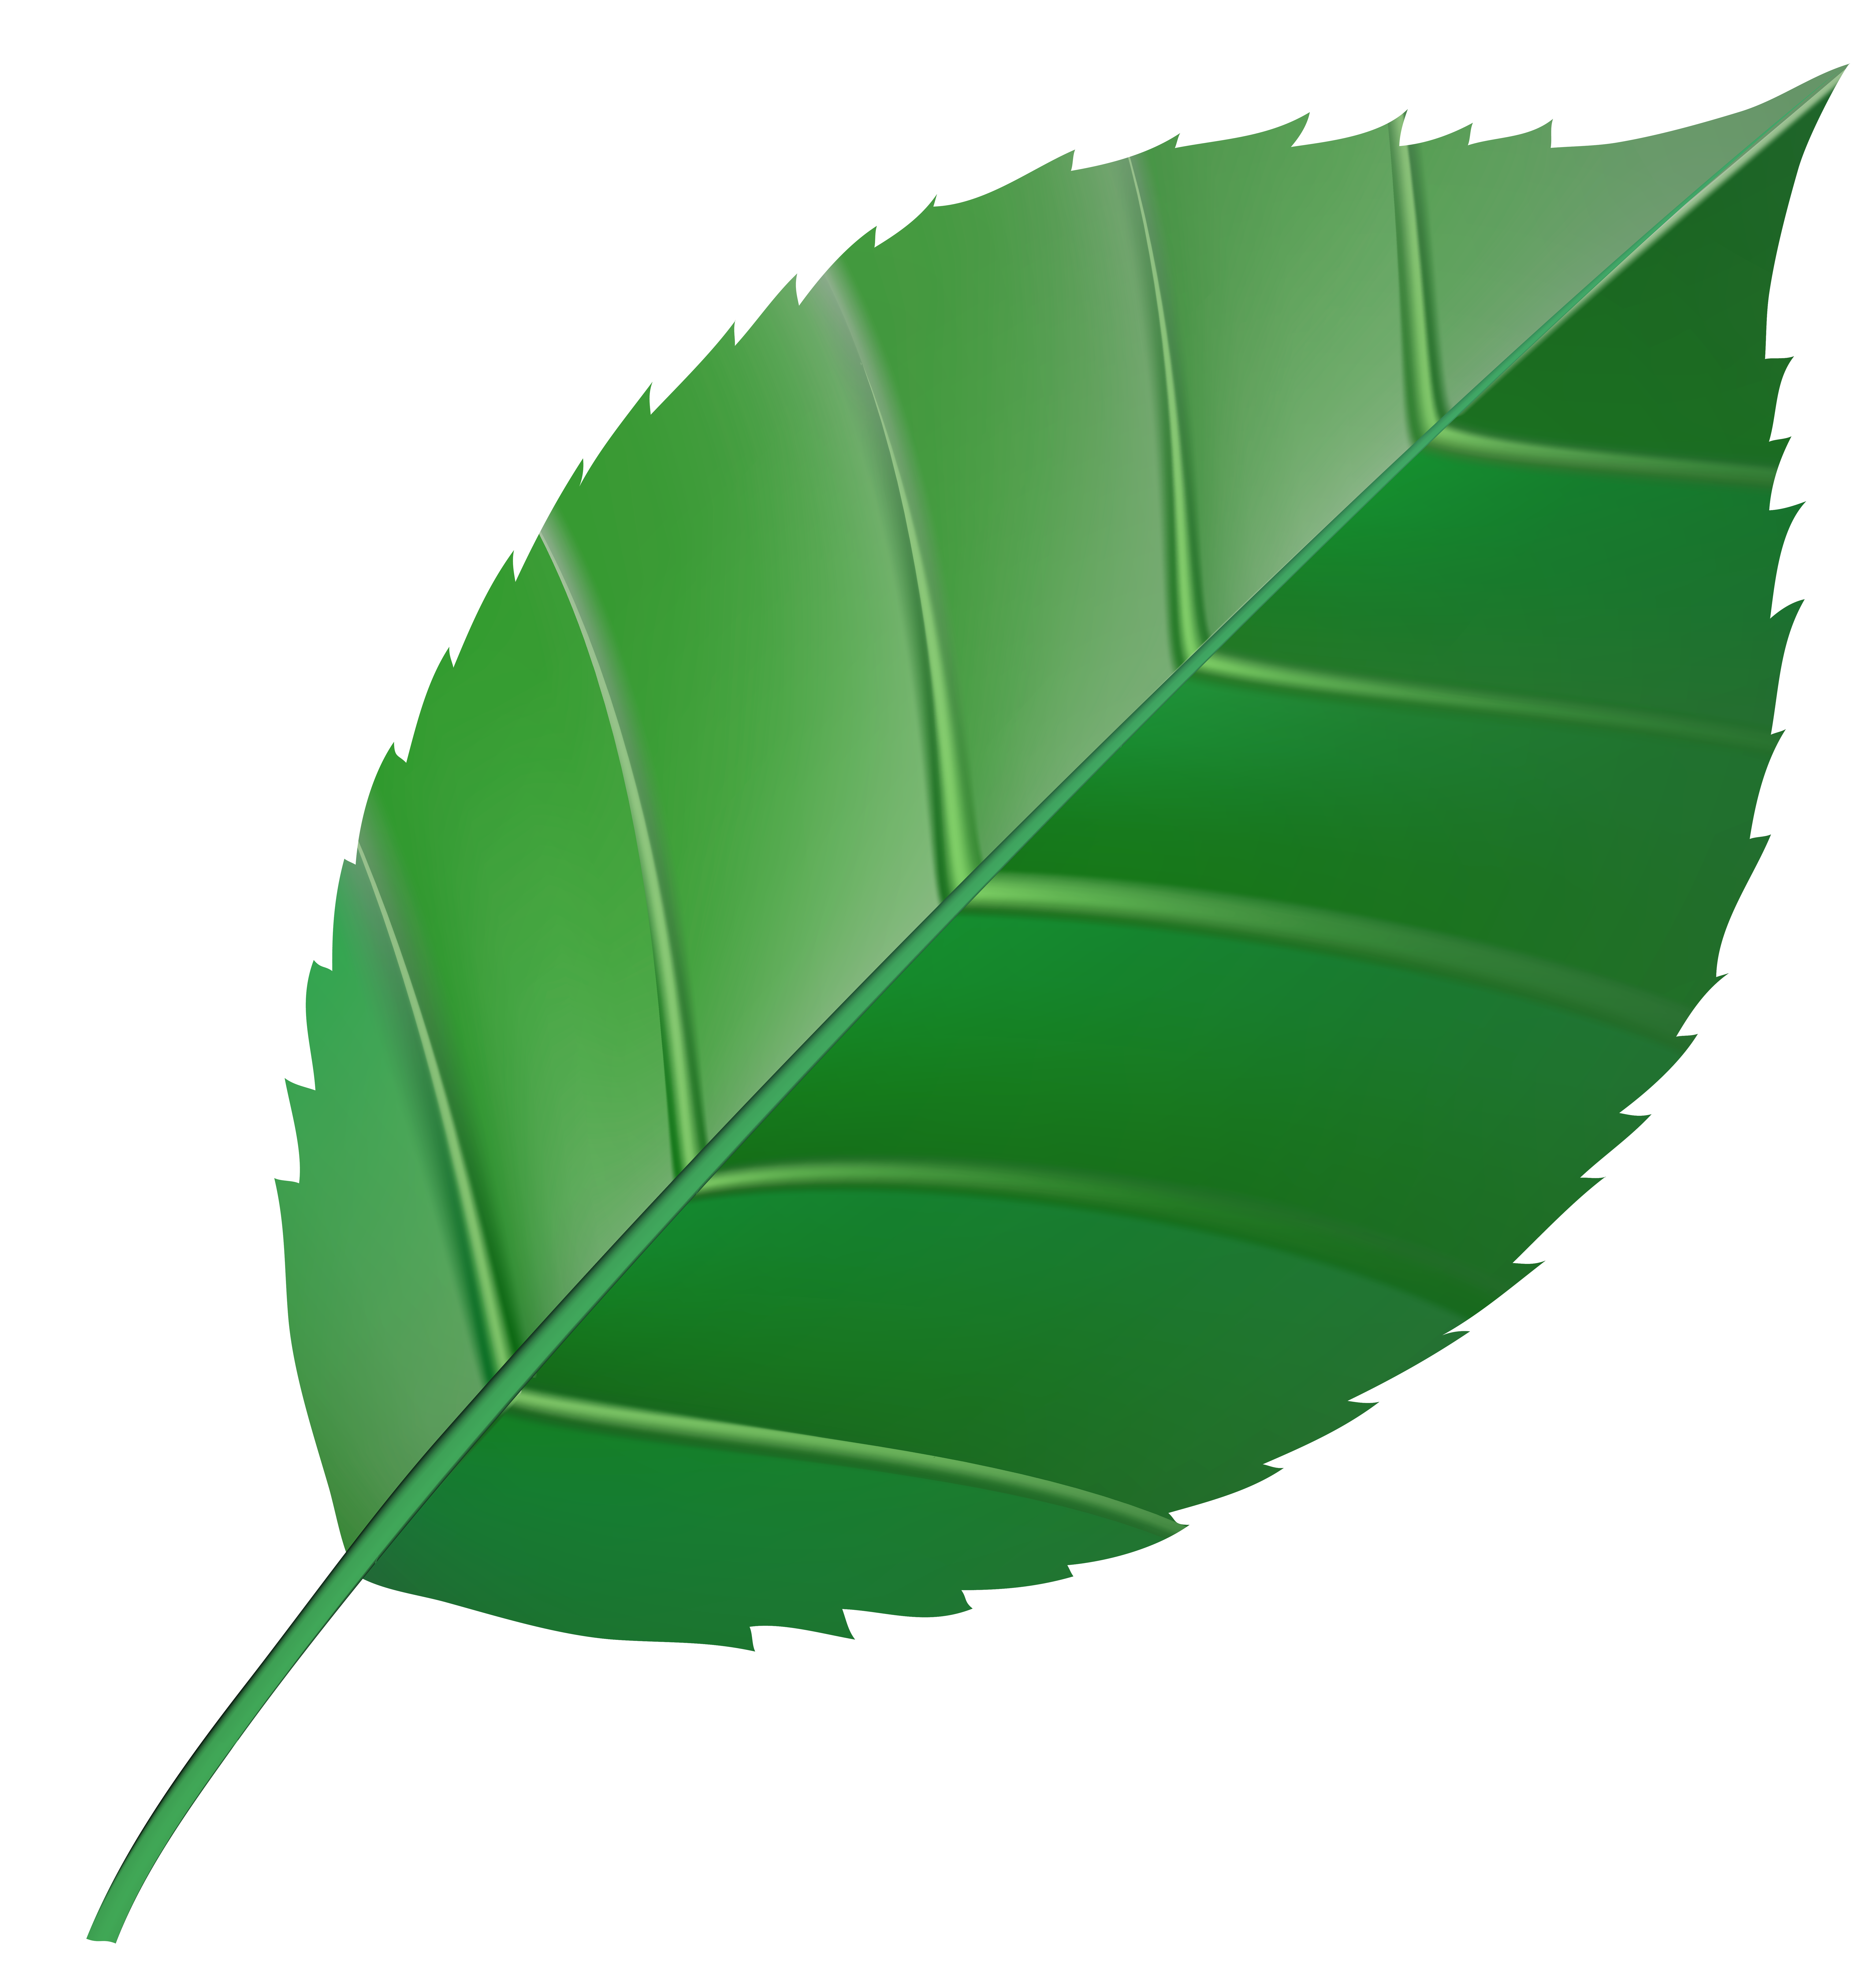 Small image png. Листья деревьев. Зеленые листочки. Листья на прозрачном фоне. Lastok.